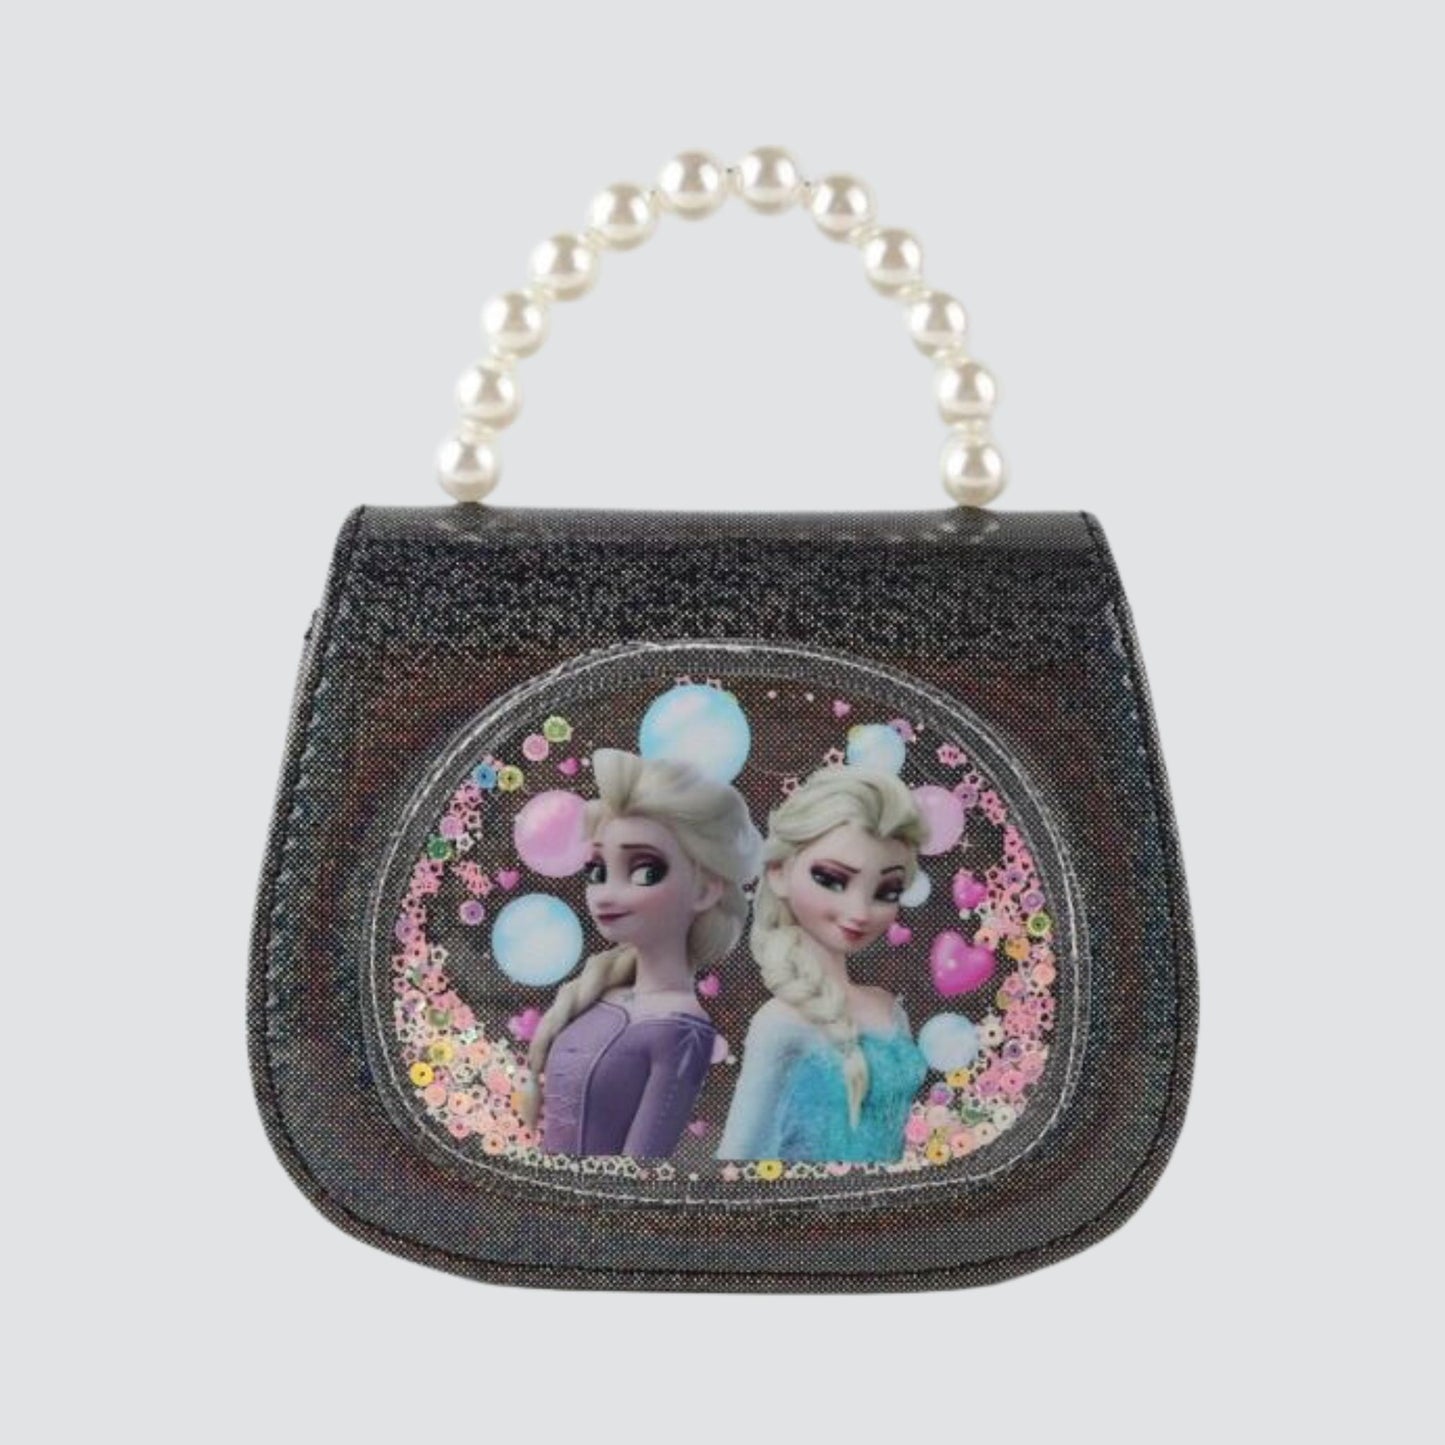 Black Frozen Handbag / Crossbody Bag